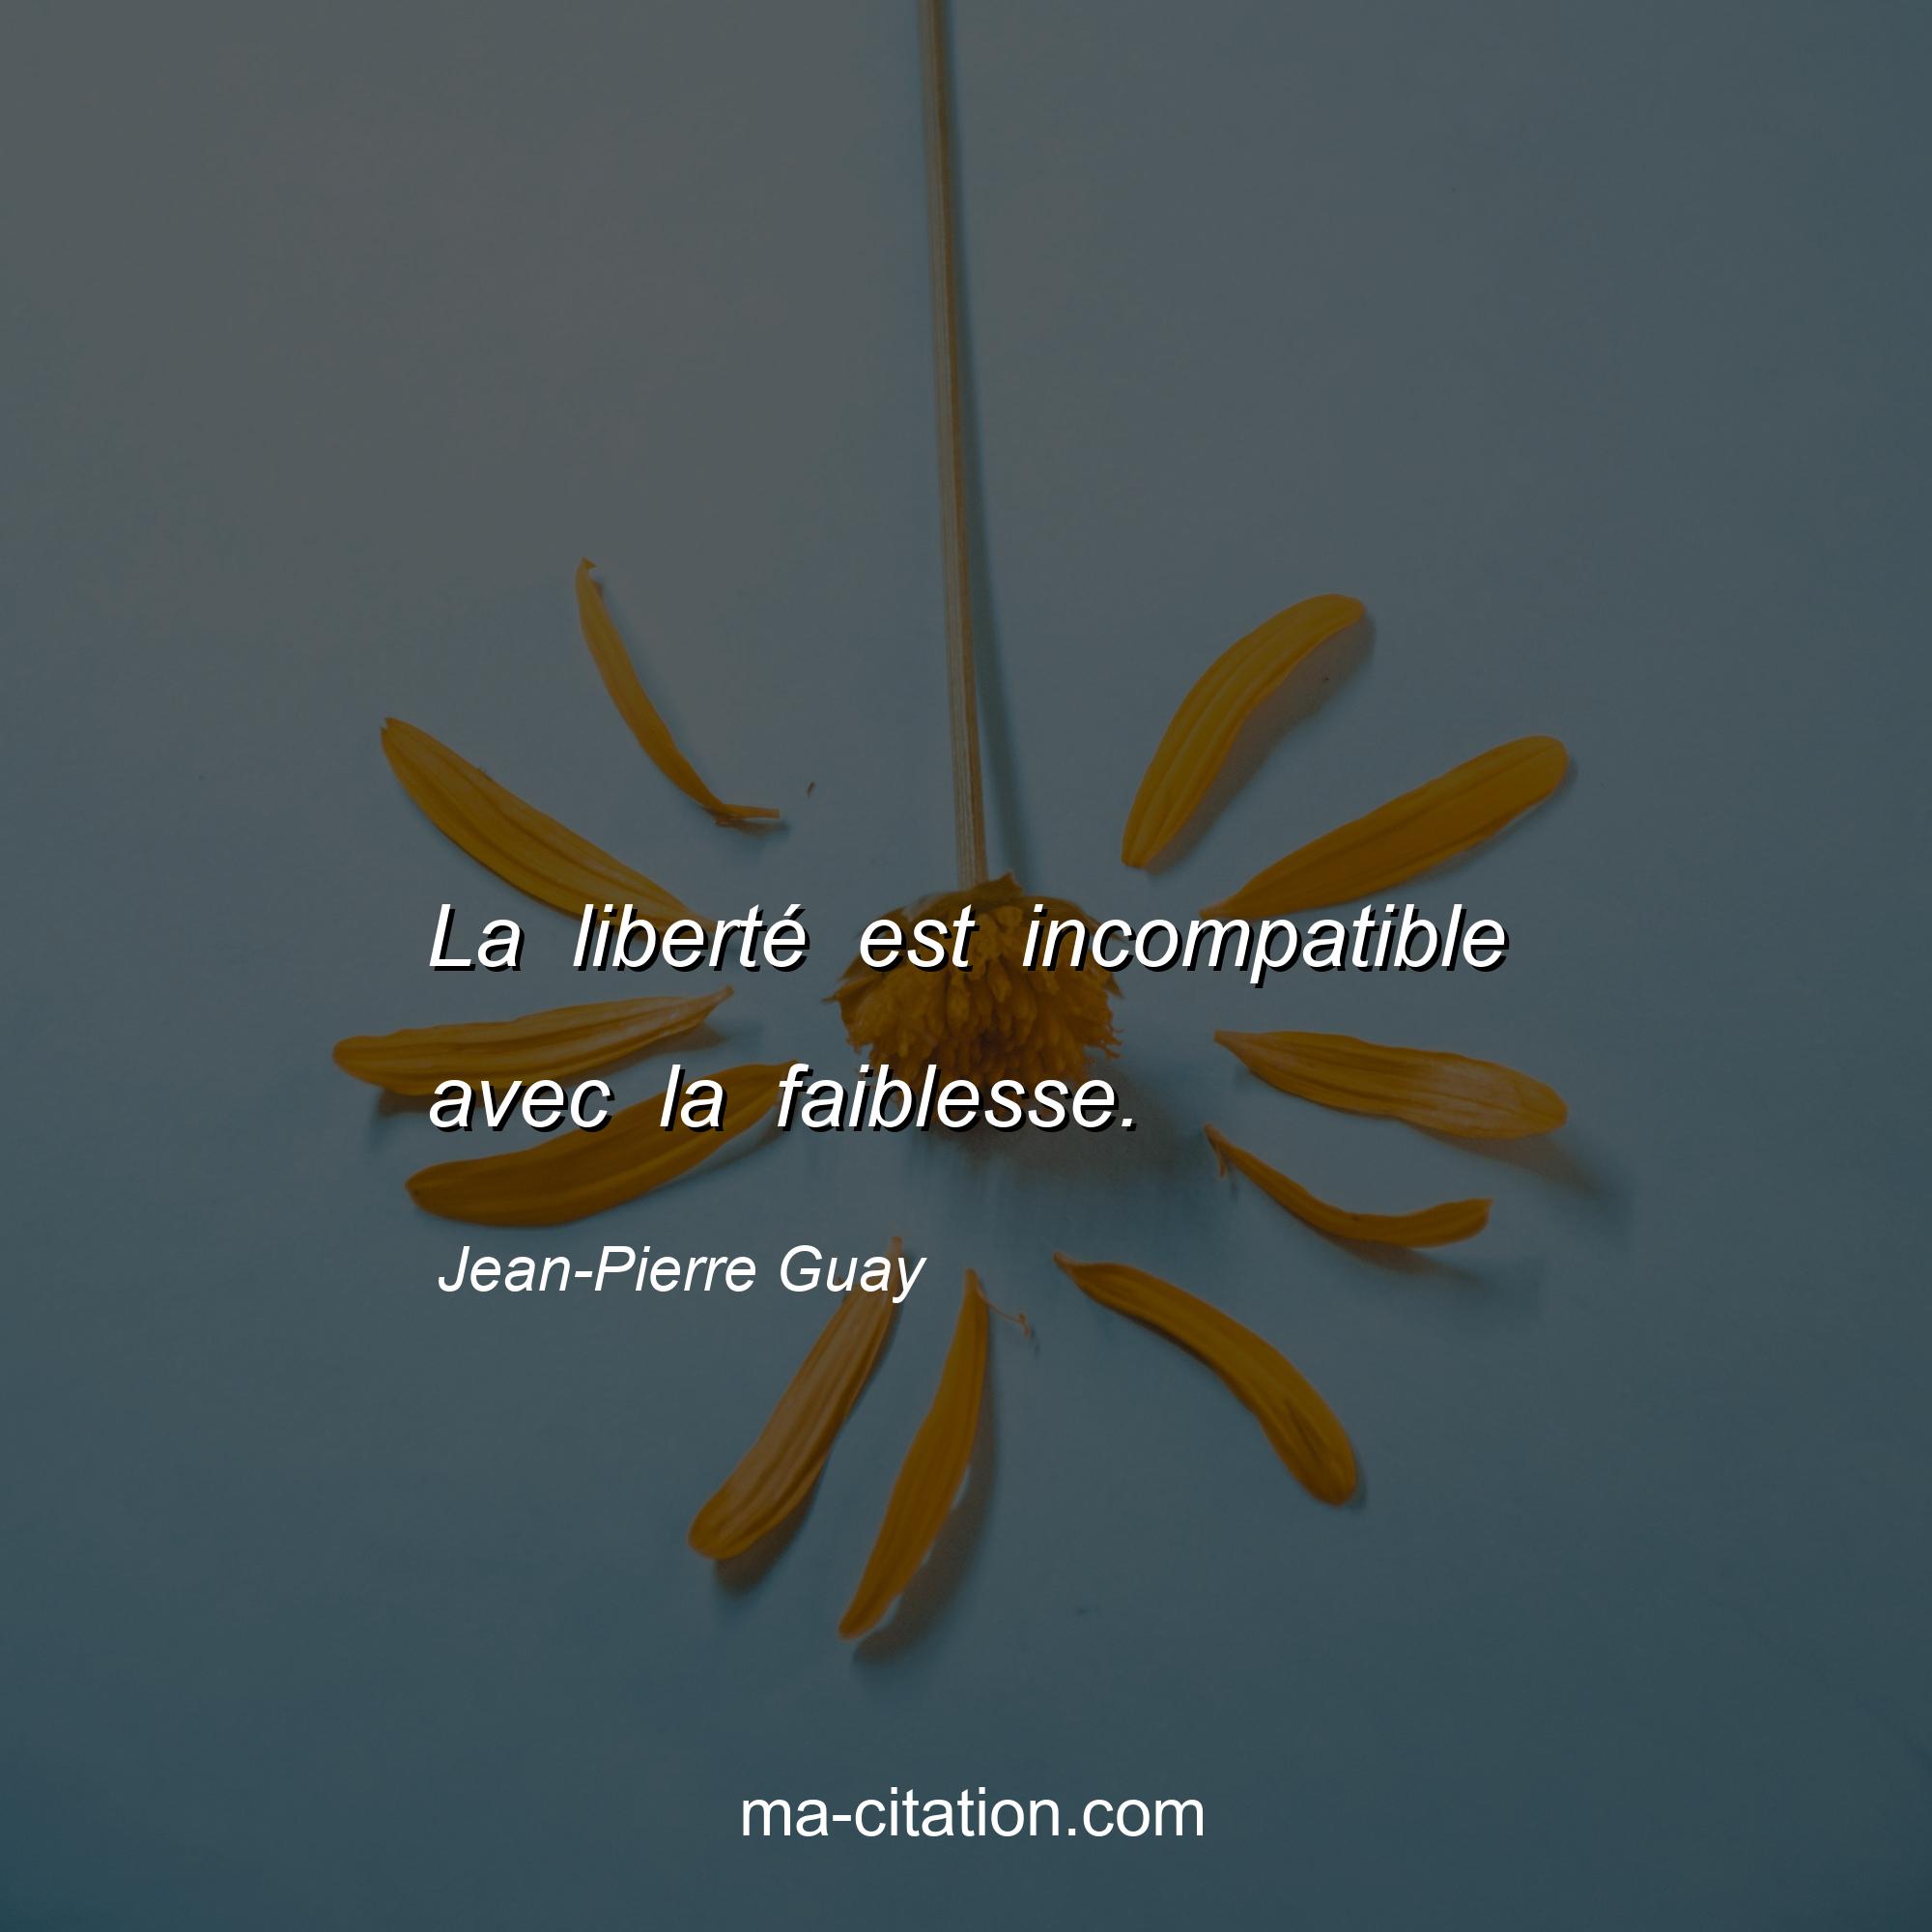 Jean-Pierre Guay : La liberté est incompatible avec la faiblesse.